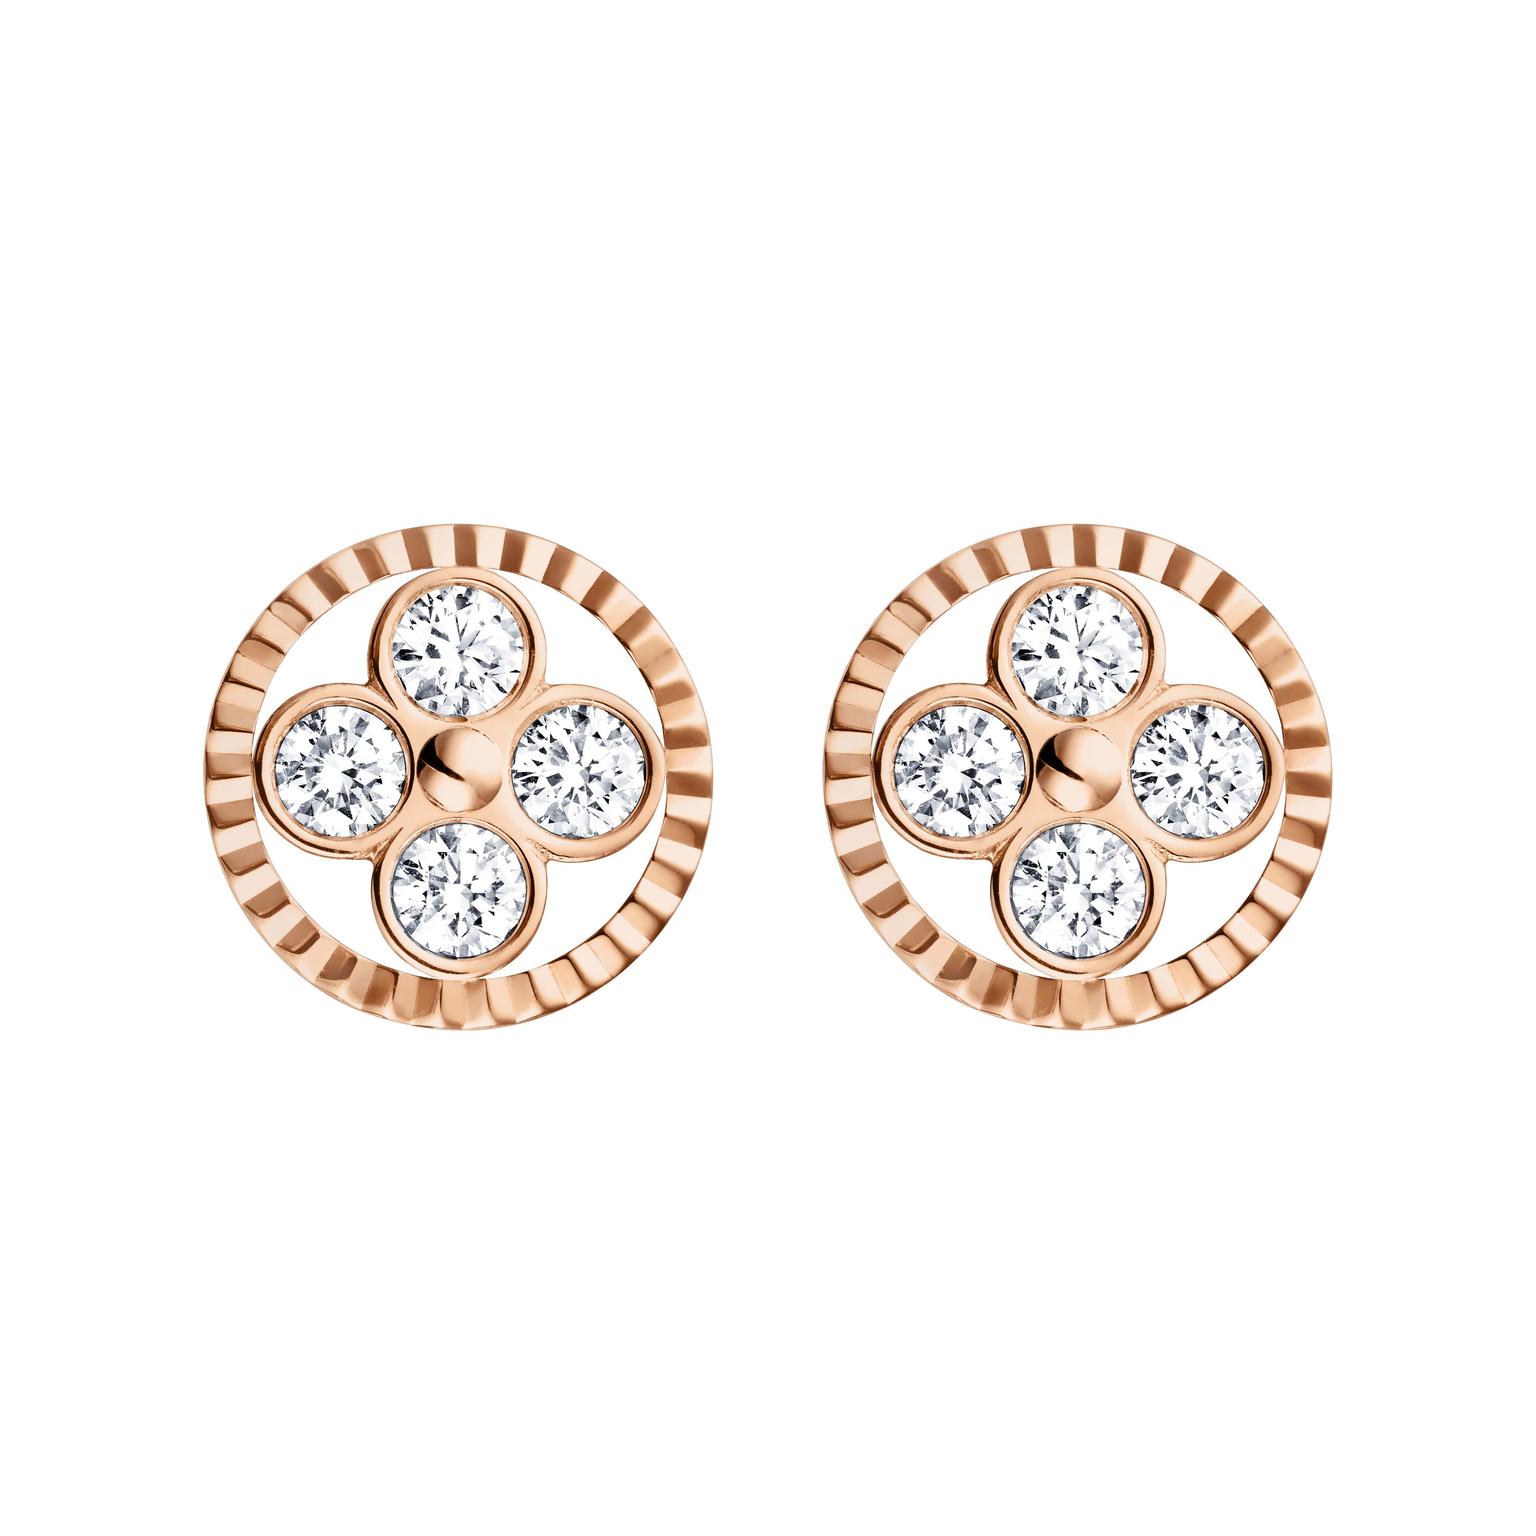 Dentelle de Monogram diamond earrings in white gold